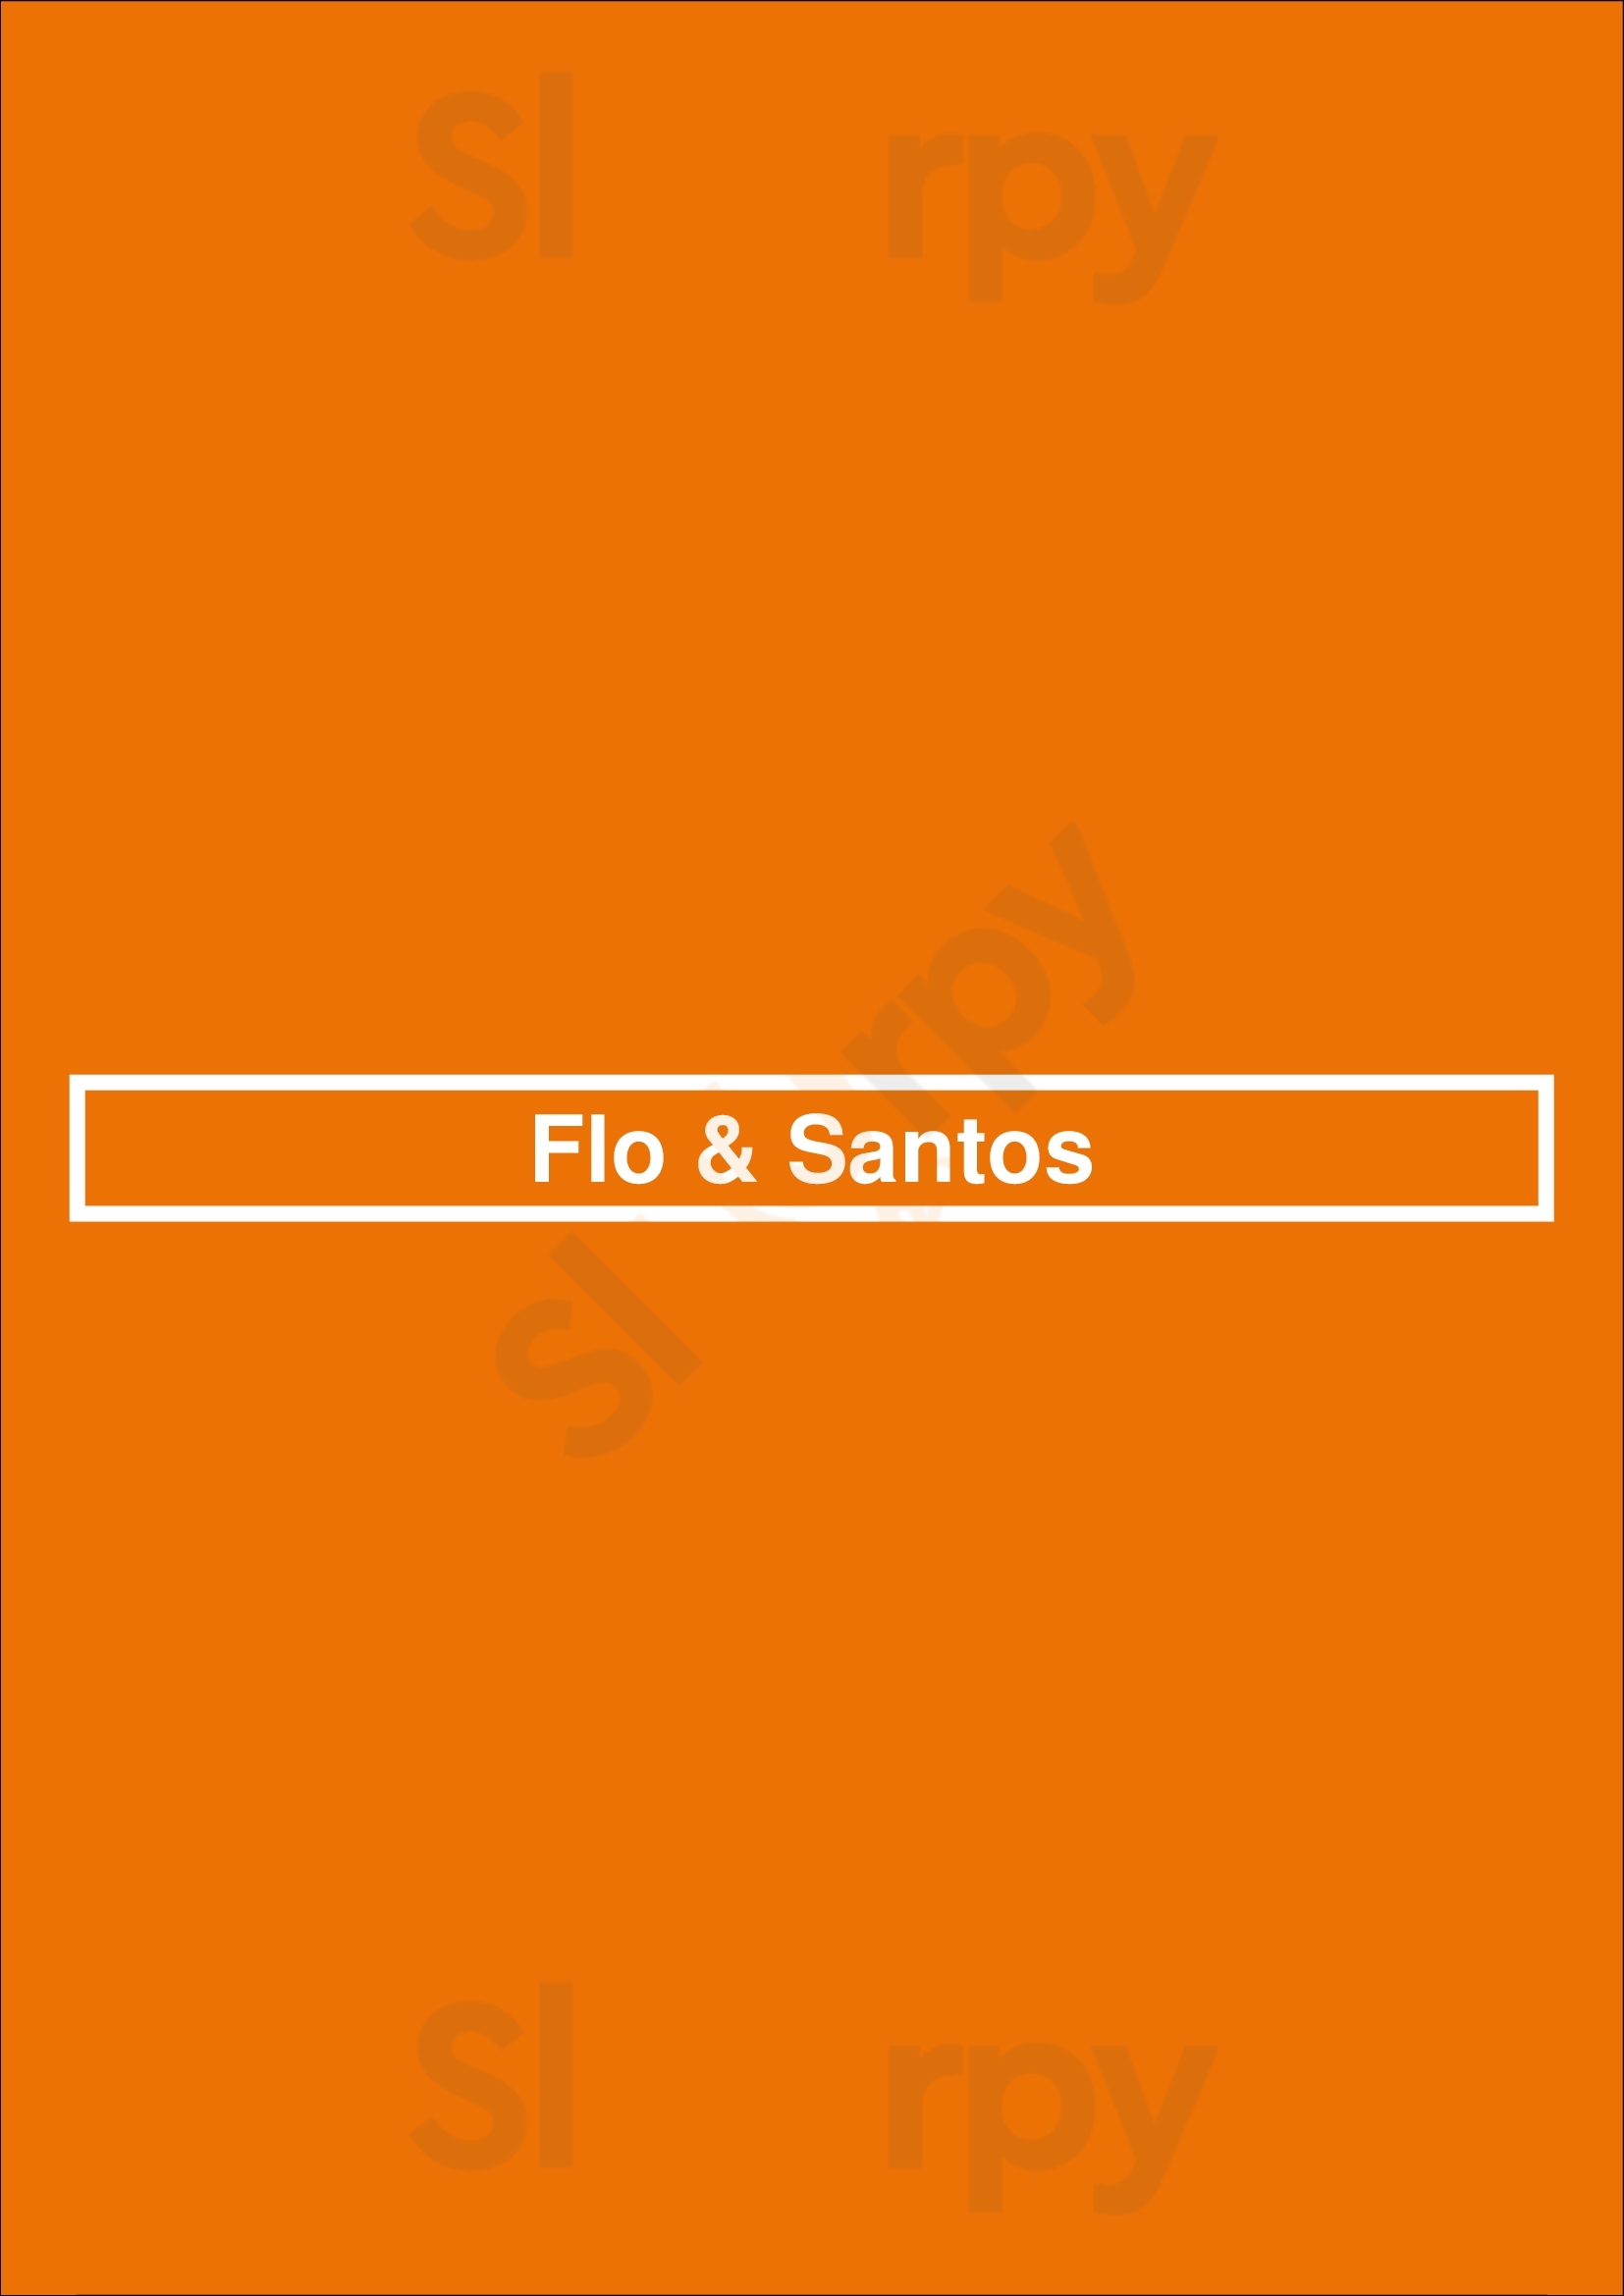 Flo & Santos Chicago Menu - 1